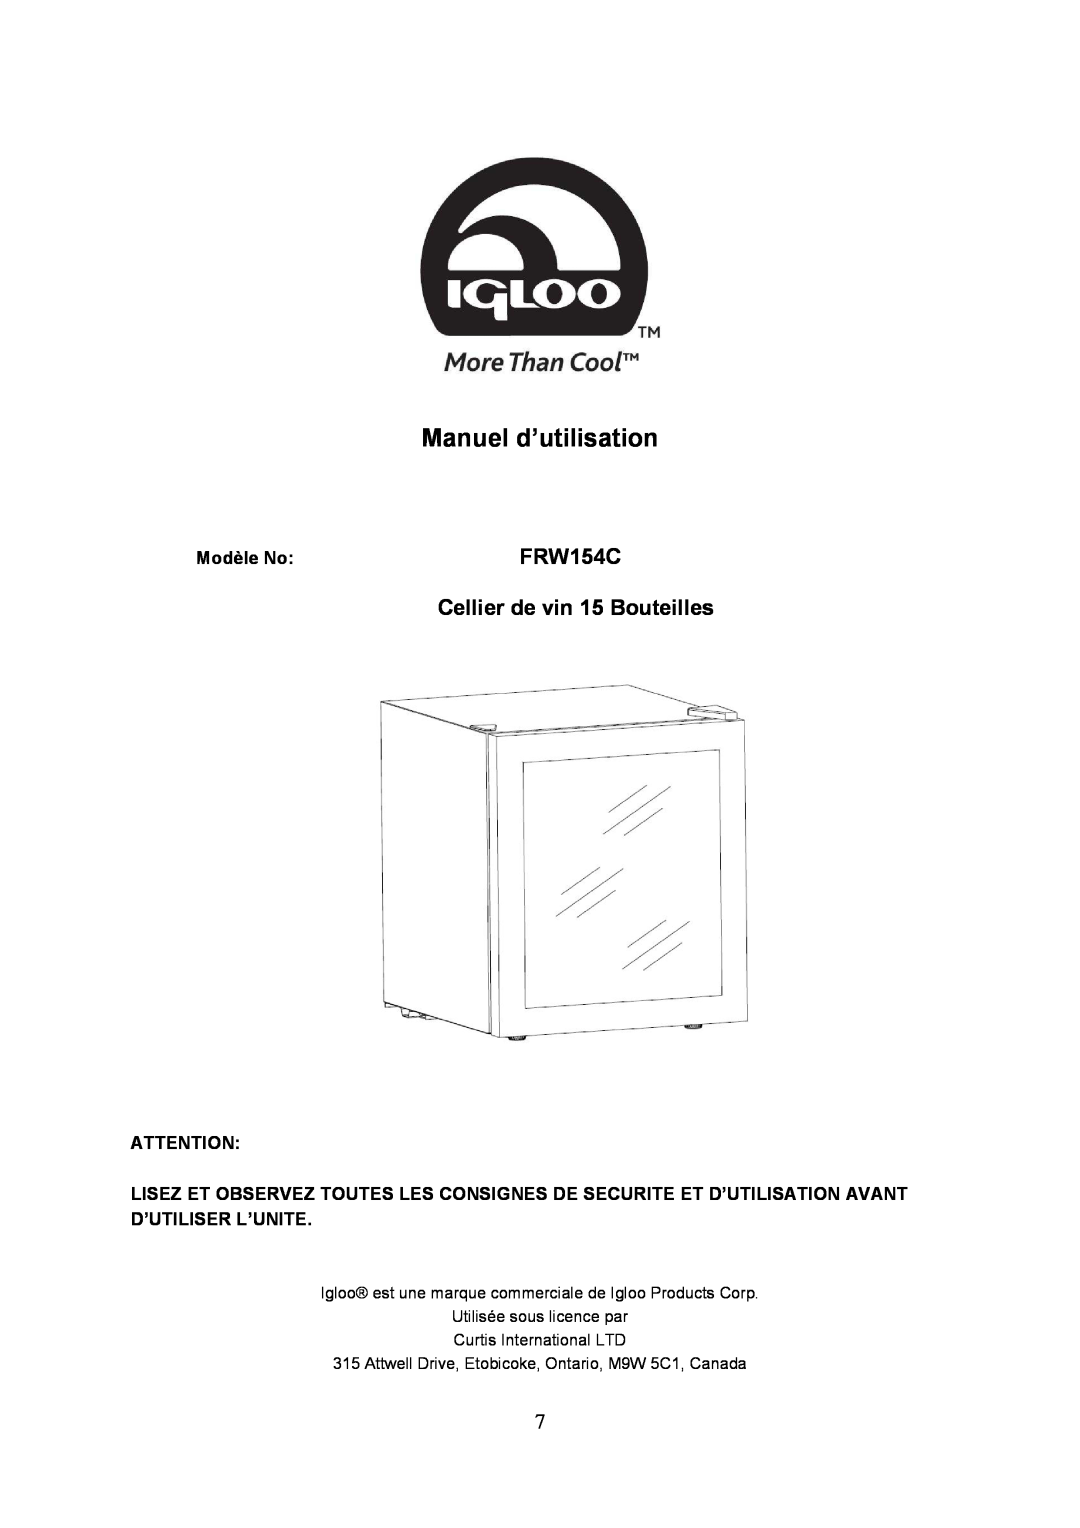 Igloo FRW154C instruction manual Manuel d’utilisation, Cellier de vin 15 Bouteilles, Modèle No 